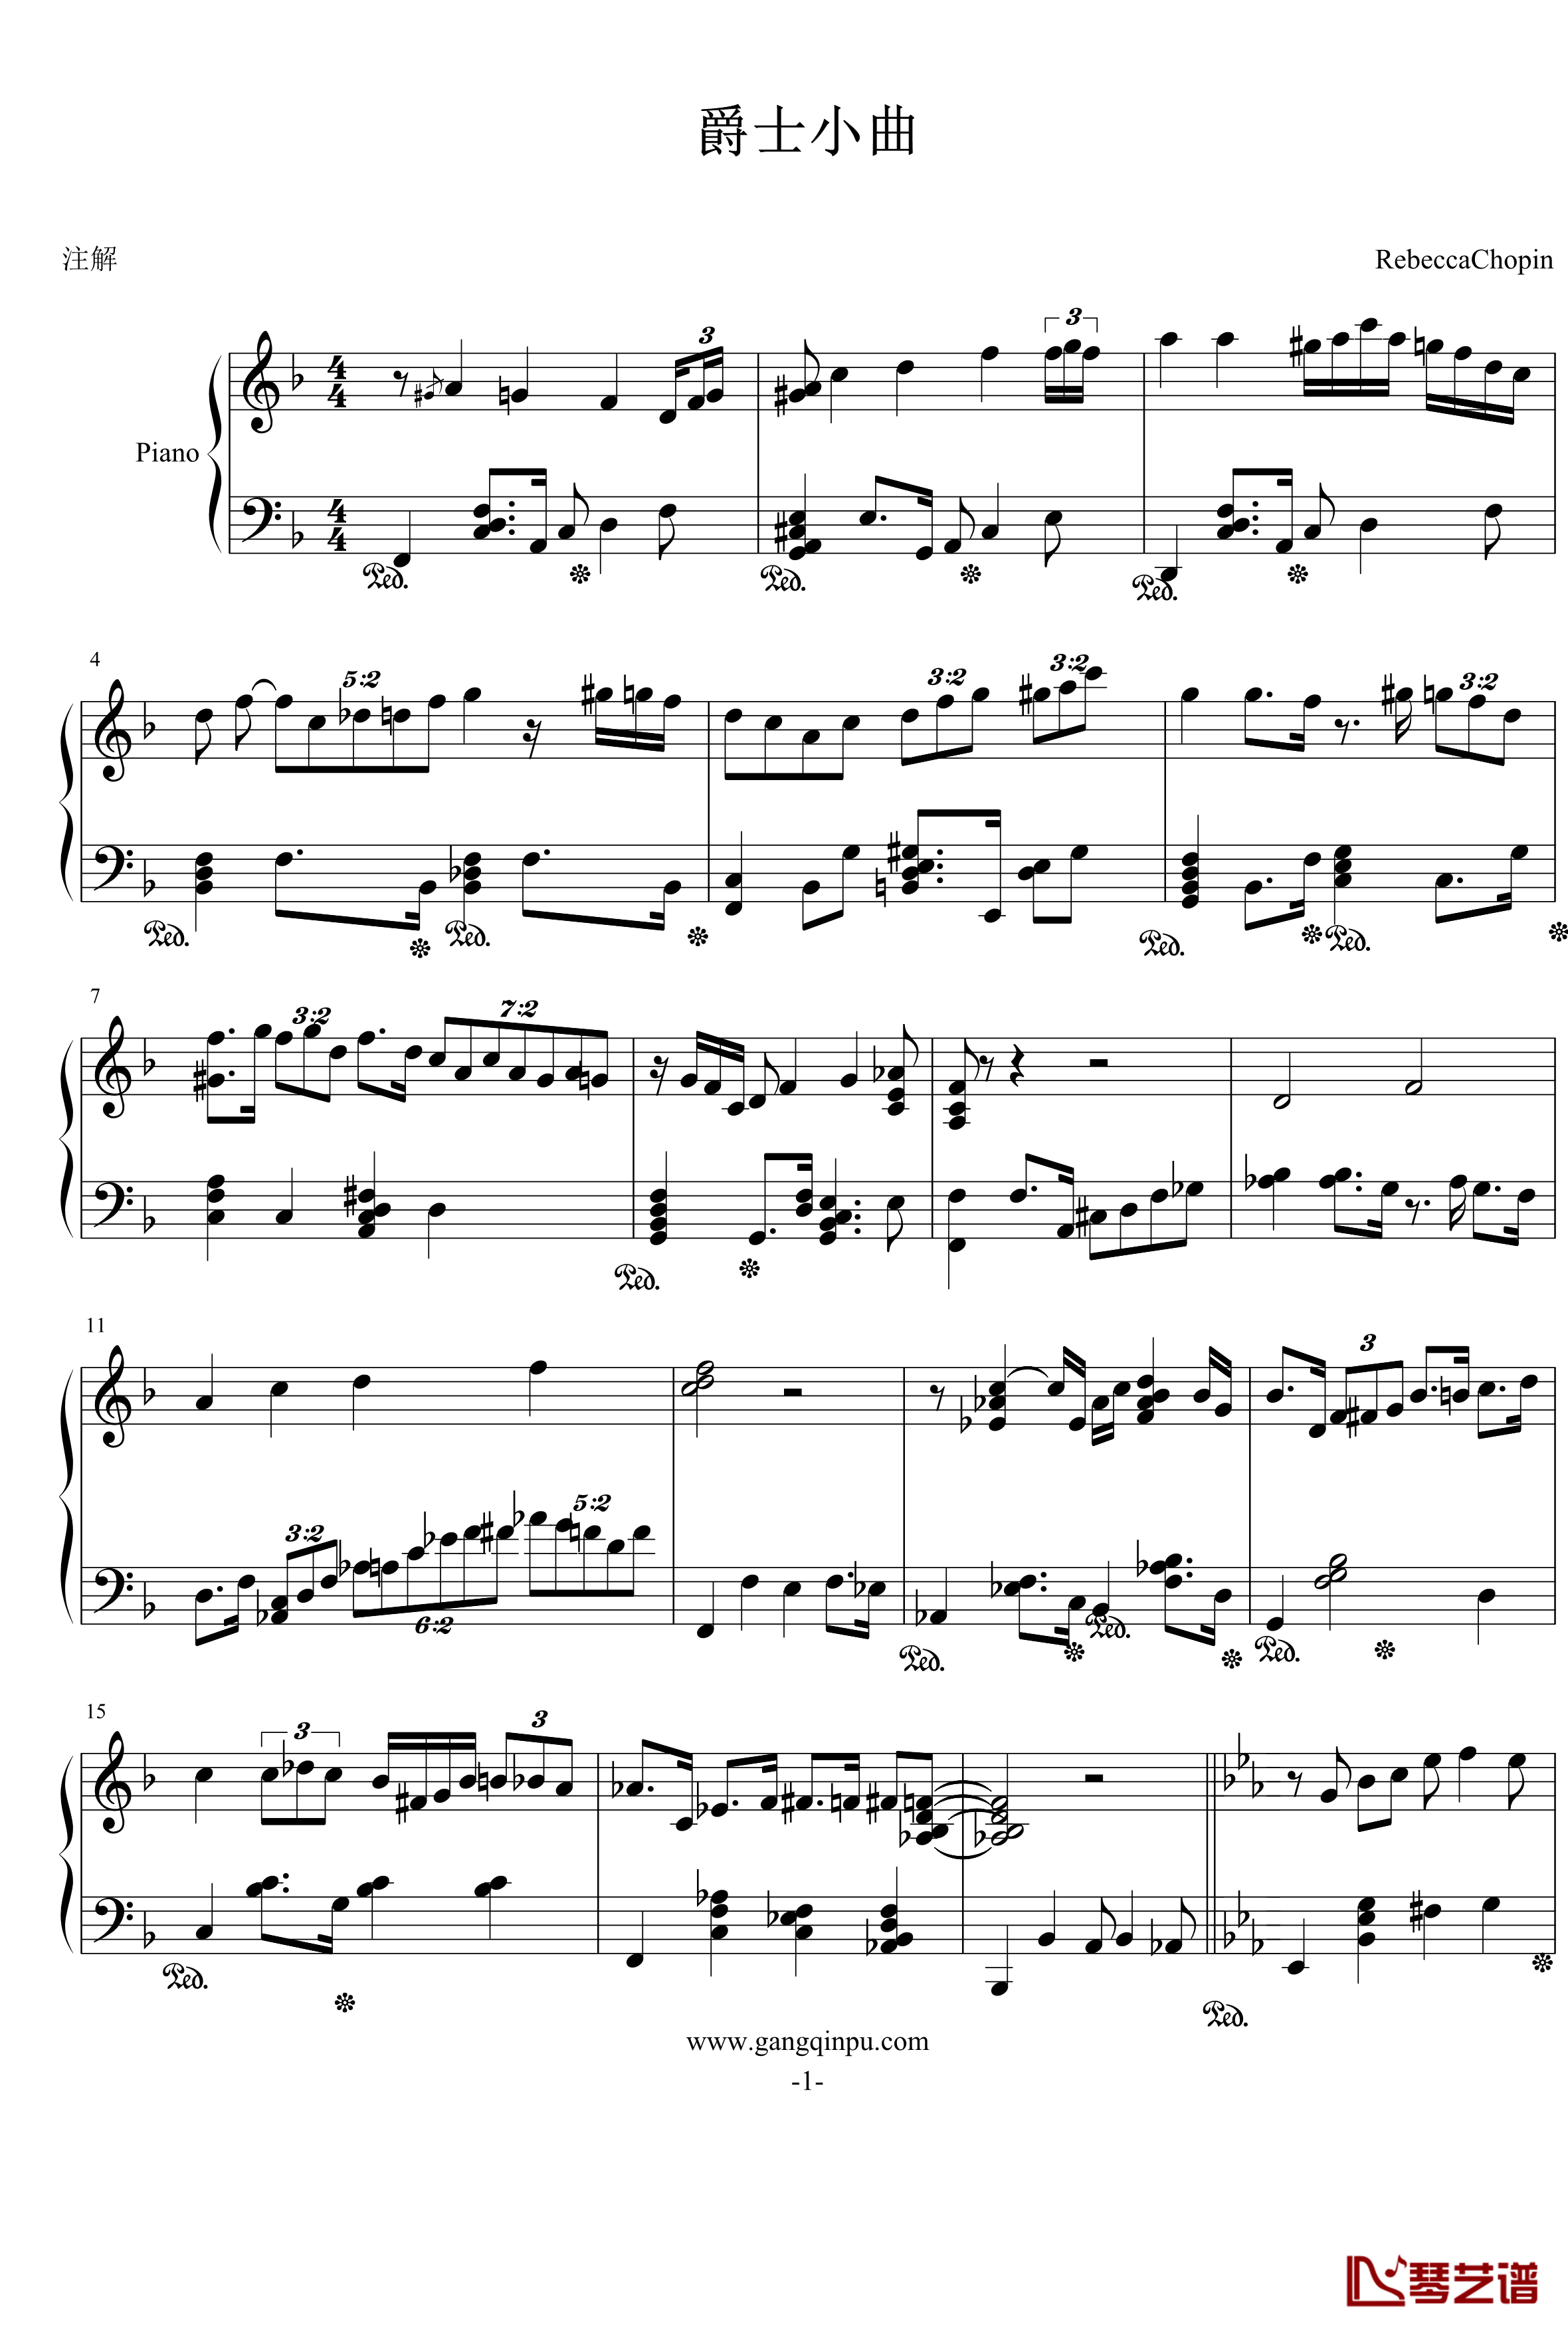 爵士小曲钢琴谱-RebeccaChopin1